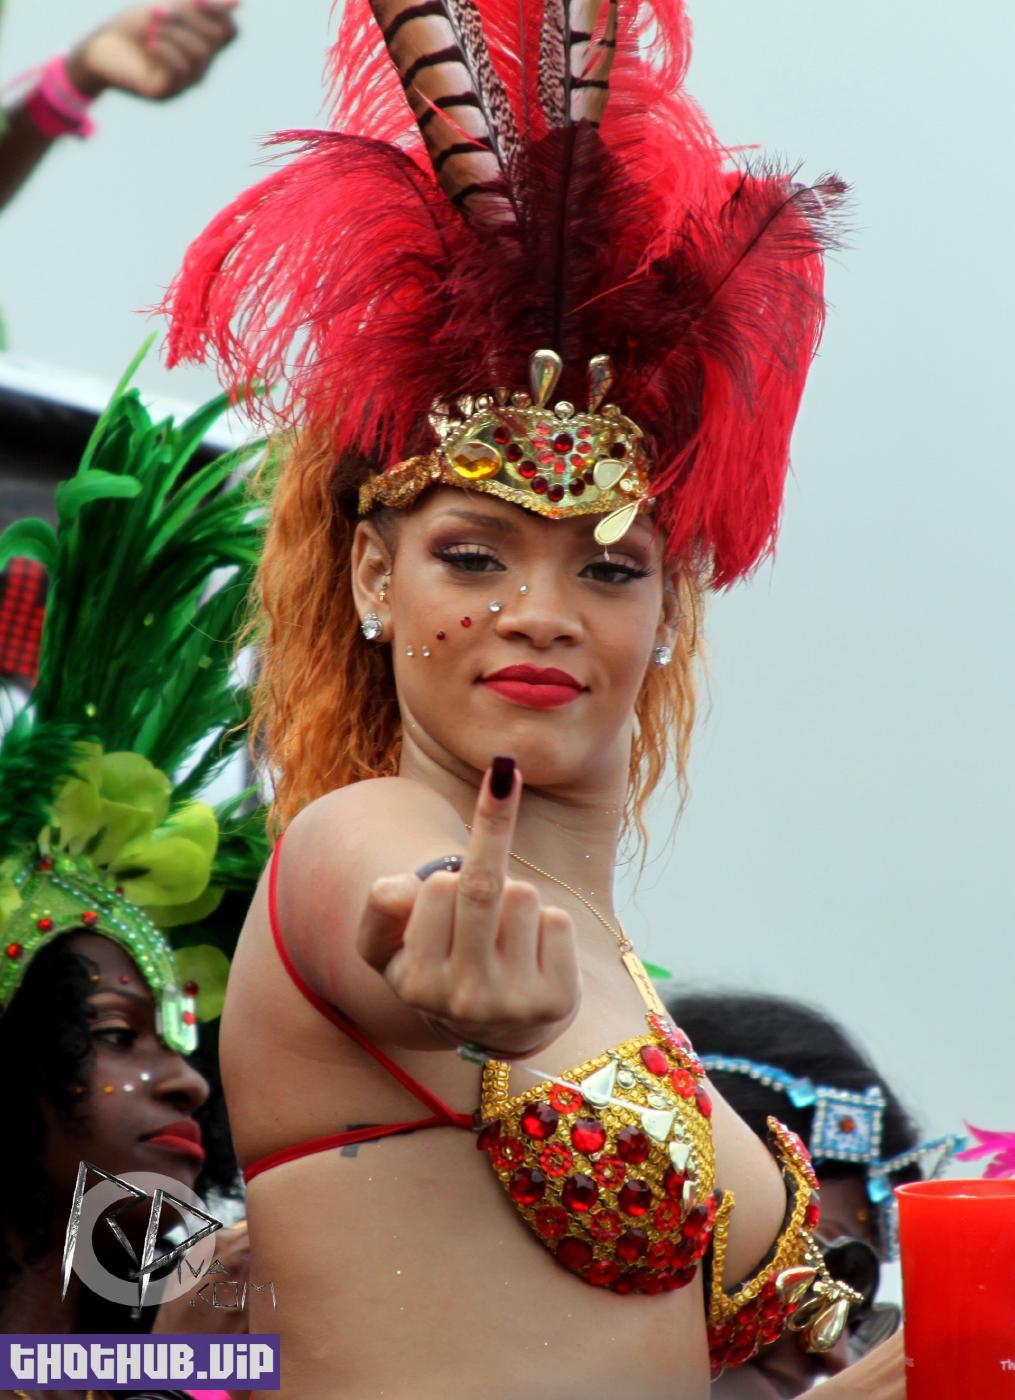 Rihanna Bikini Tease Barbados Festival Photos Leaked